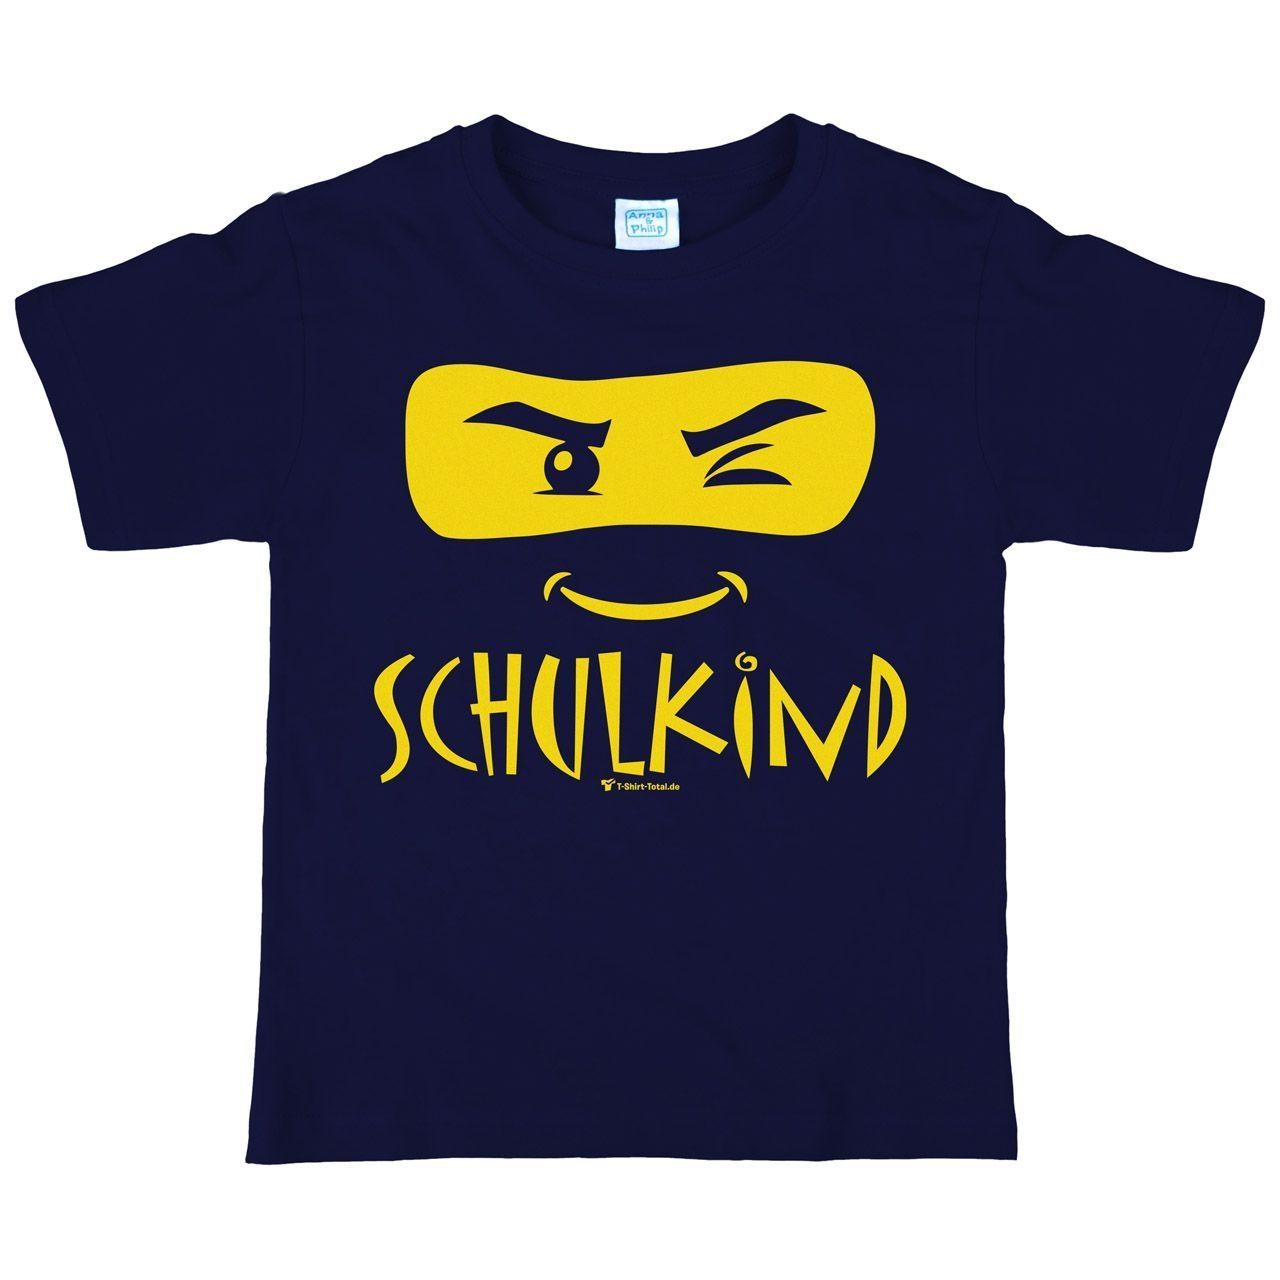 Schulkind Maske Kinder T-Shirt navy 122 / 128